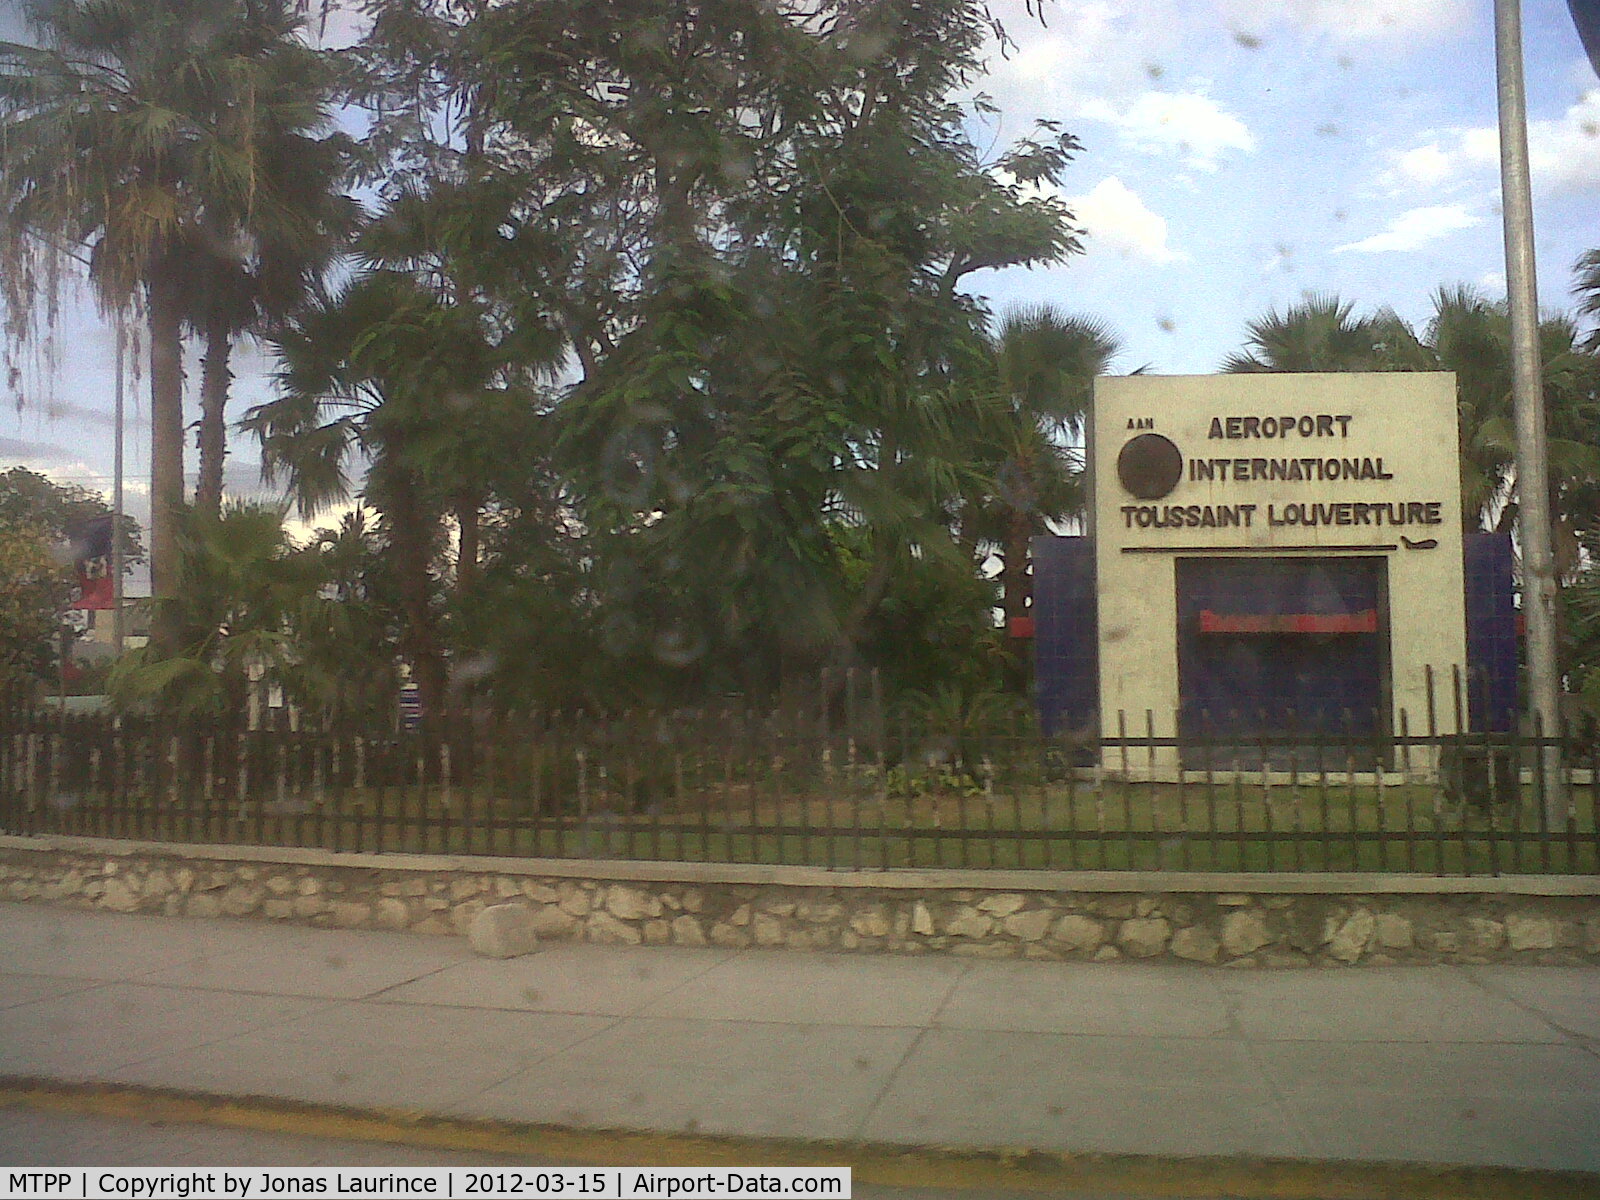 Port-au-Prince International Airport (Toussaint Louverture Int'l), Port-au-Prince Haiti (MTPP) - The entrance of the  Toussaint Louverture International Airport of Port-au-Prince (PAP)